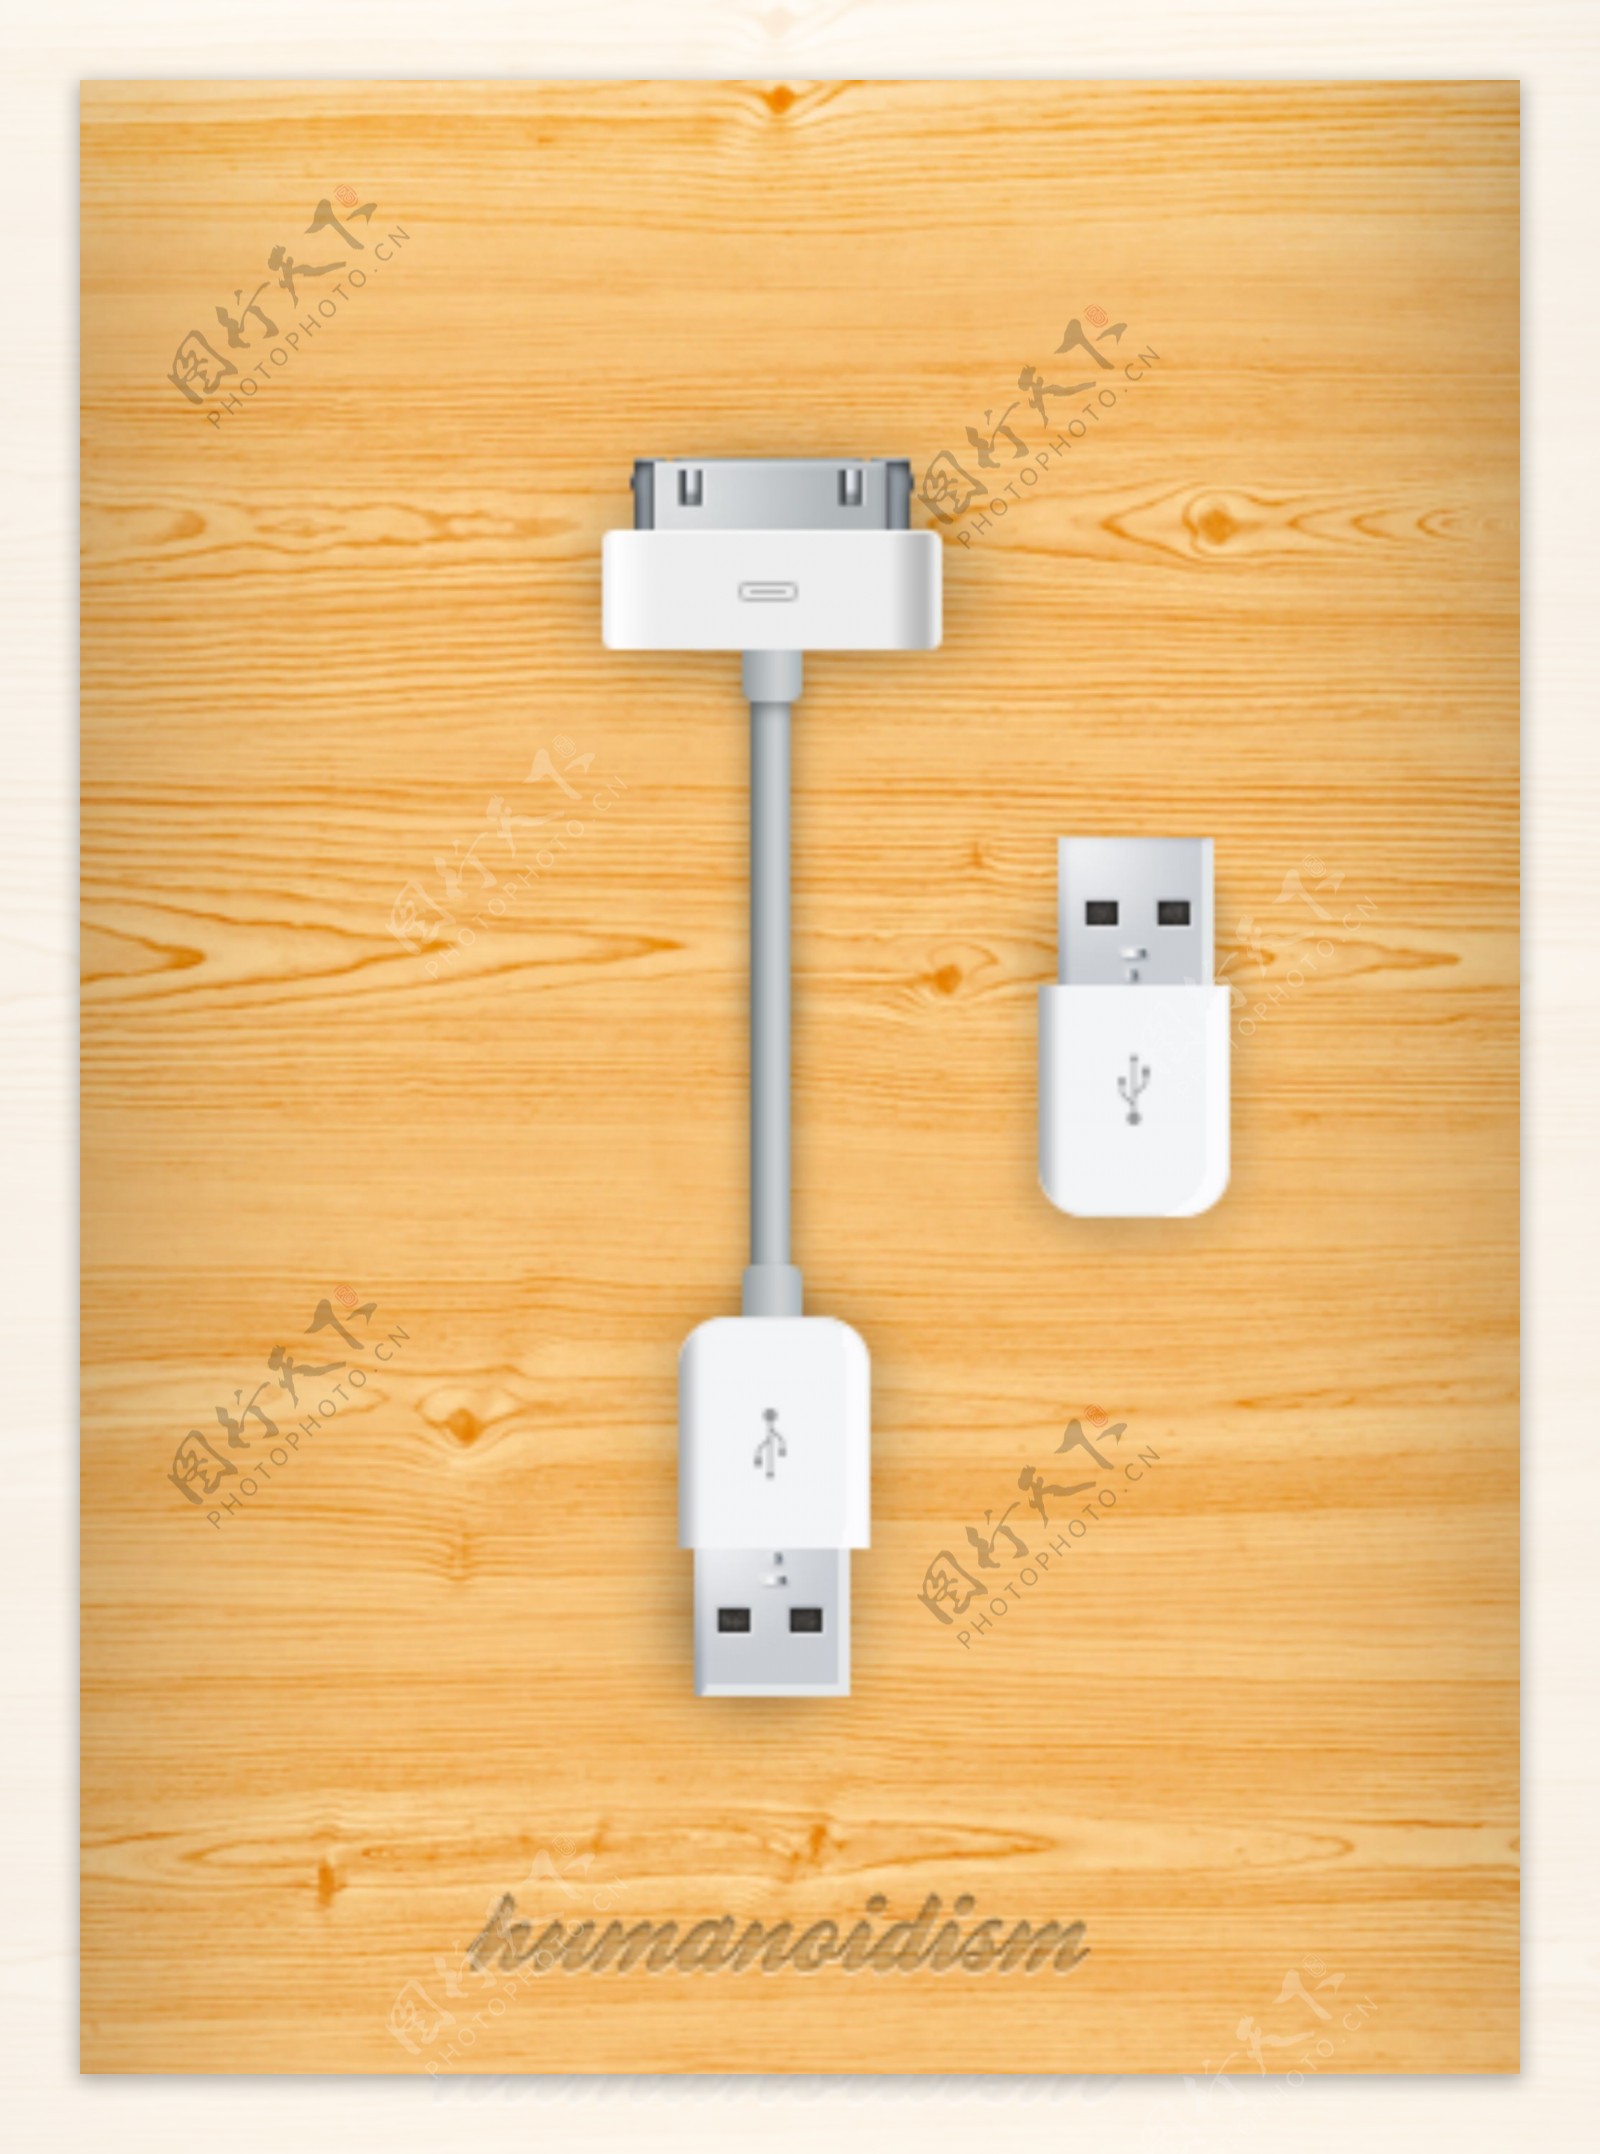 USB接口PSD素材